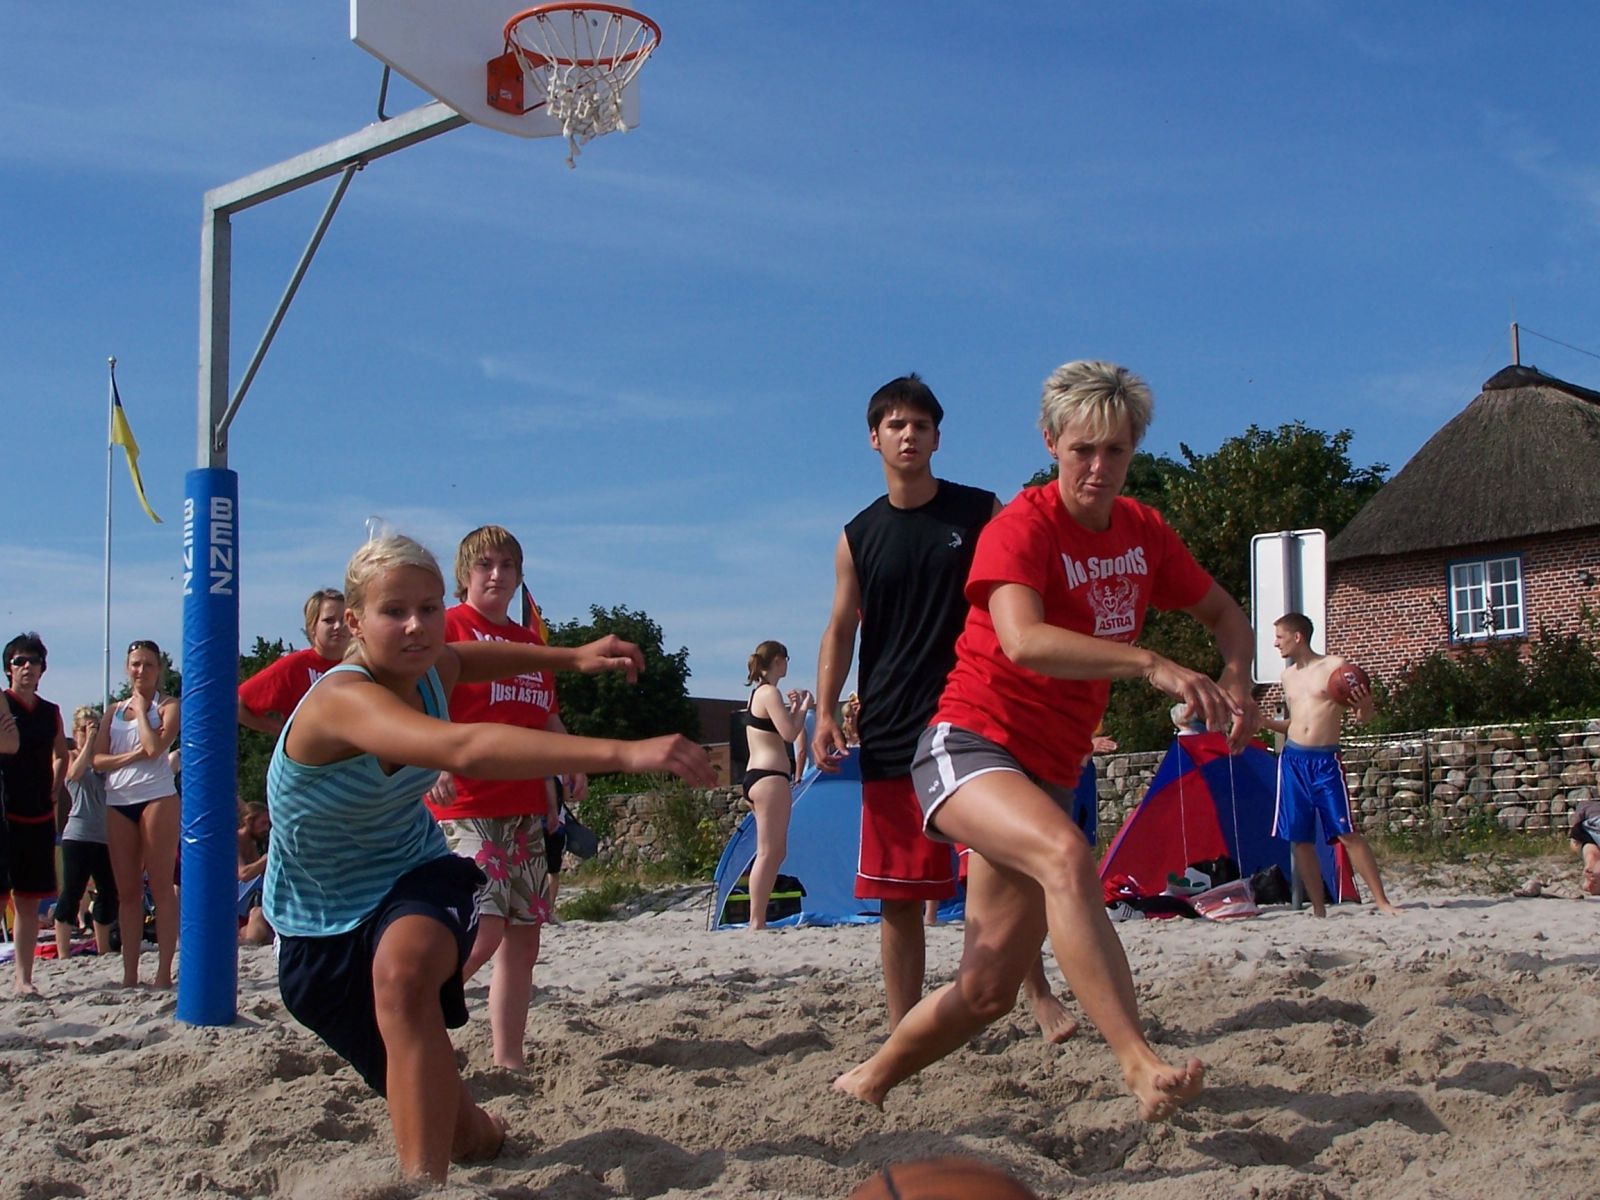 tl_files/bilder/Beach-Turniere/1 Kampf um den Ball.jpg